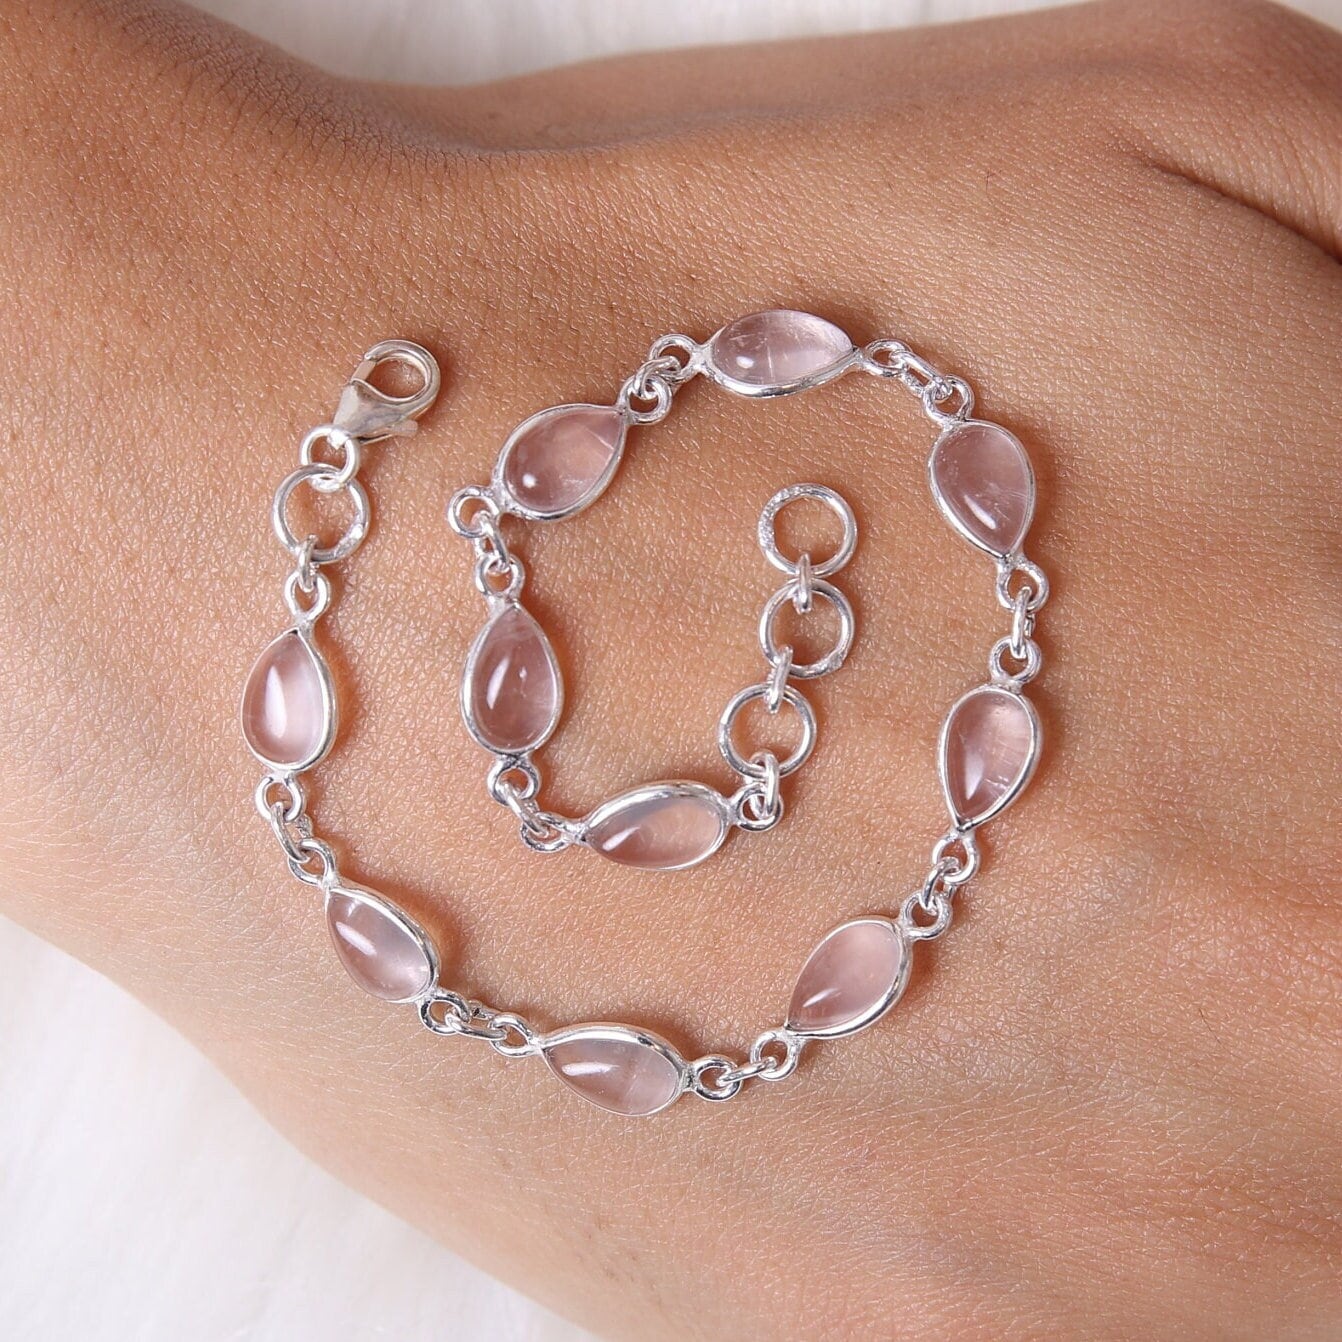 Rose Quartz Bracelet, 925 Sterling Silver Bracelet, January Birthstone, Handmade Gemstone Jewelry, Adjustable Chain Bracelet, Gift for Her